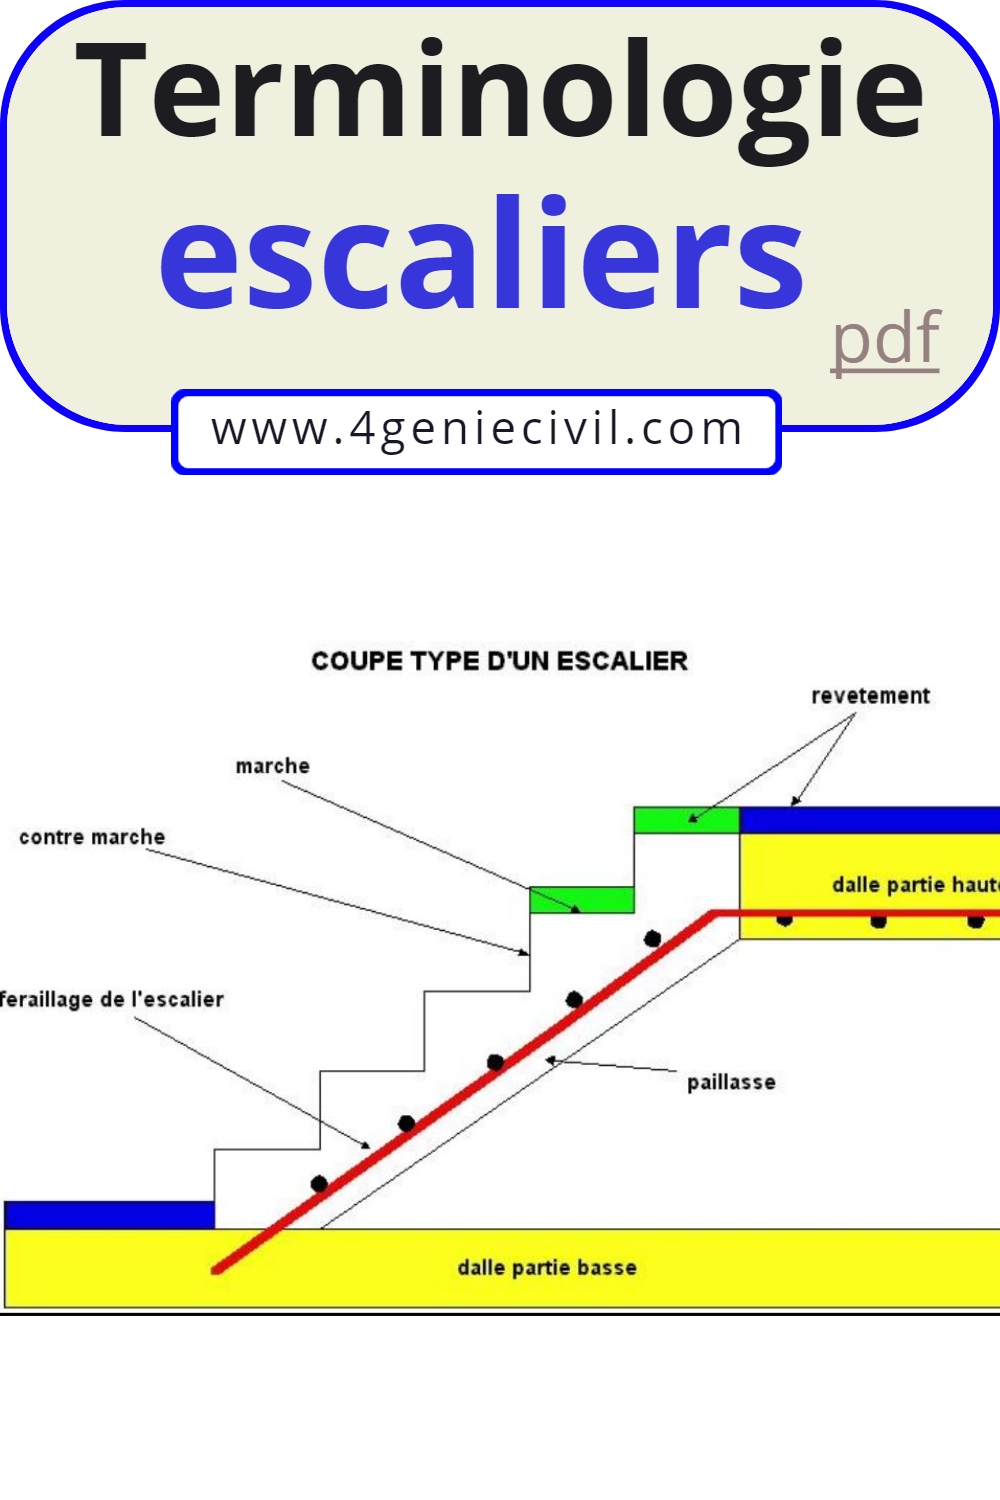 les differents types d'escaliers pdf, type d'escalier tournant, type d'escalier intérieur, different type d'escalier en beton